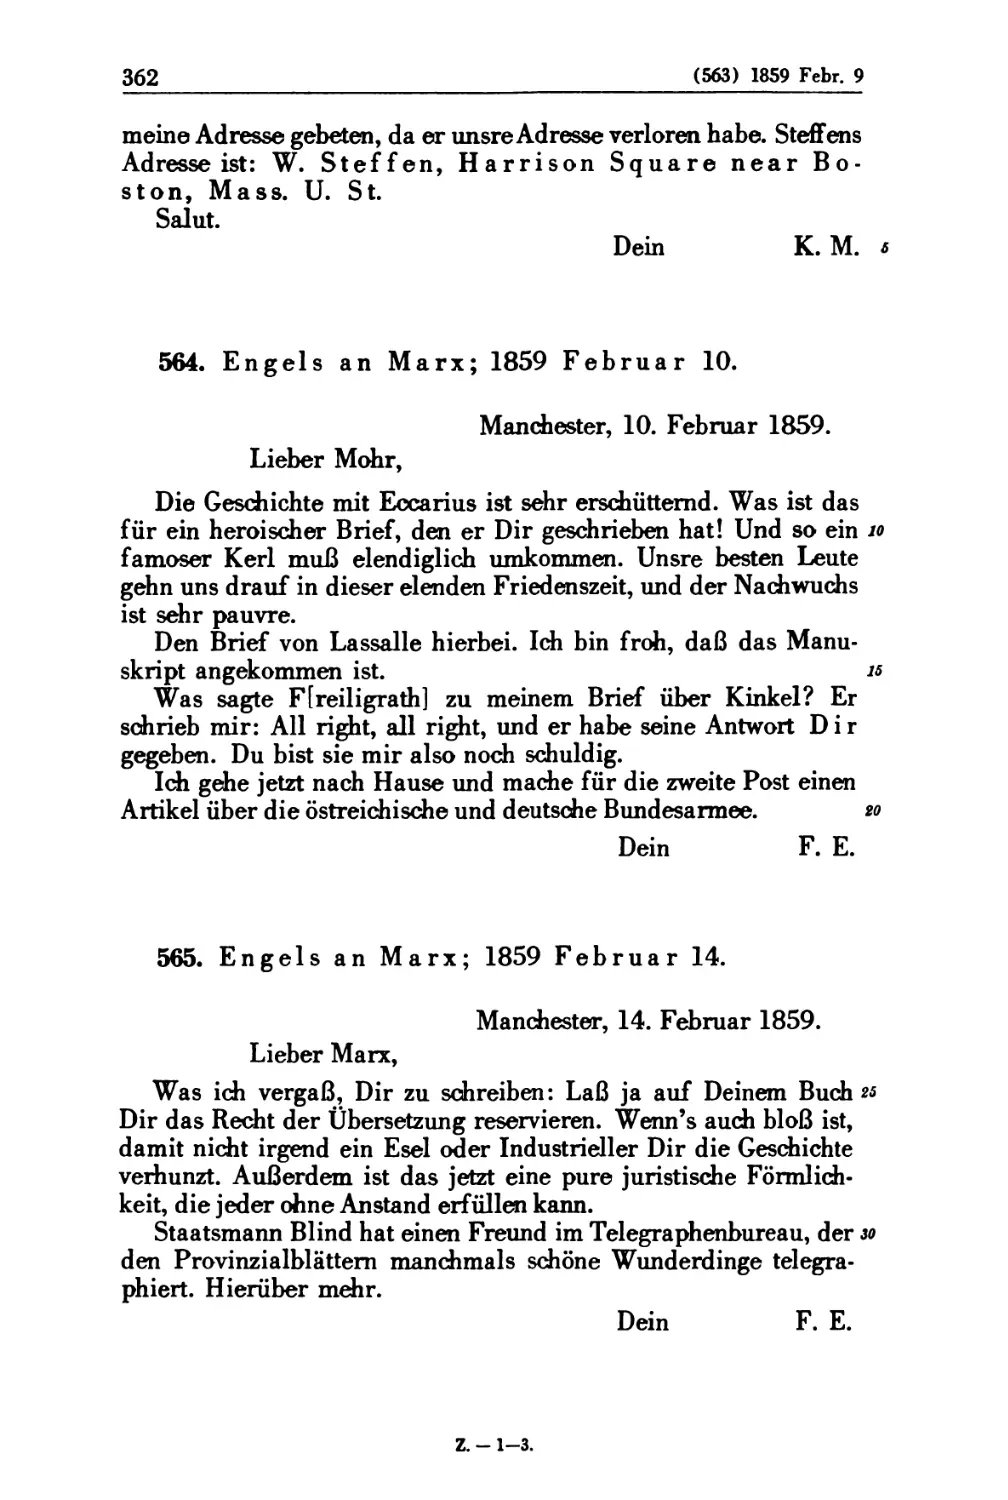 564. Engels an Marx; 1859 Februar 10
565. Engels an Marx; 1859 Februar 14